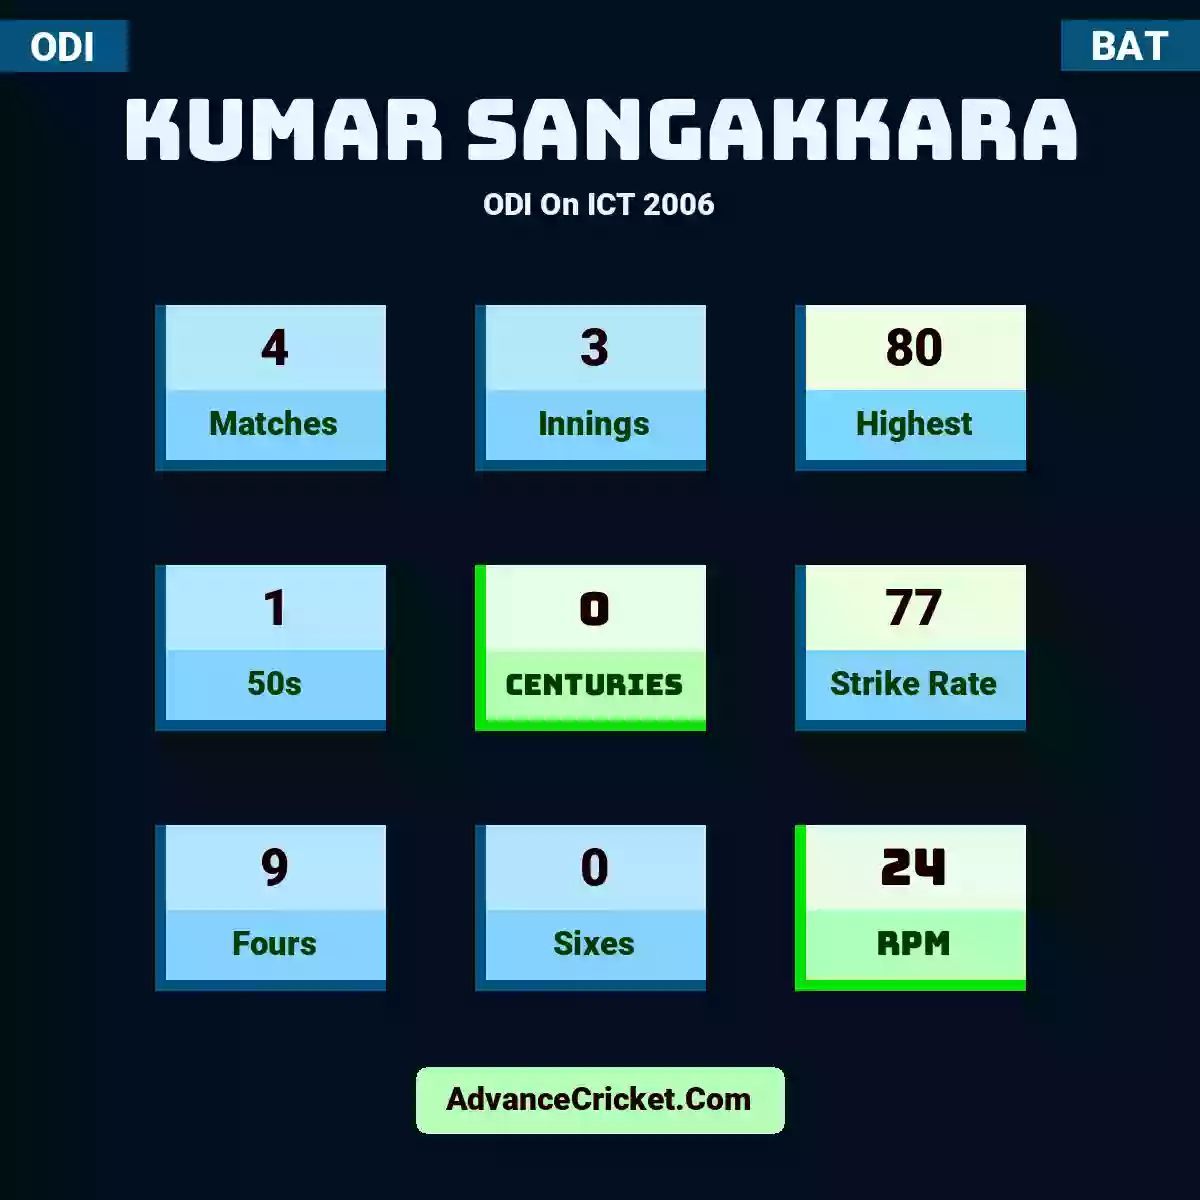 Kumar Sangakkara ODI  On ICT 2006, Kumar Sangakkara played 4 matches, scored 80 runs as highest, 1 half-centuries, and 0 centuries, with a strike rate of 77. K.Sangakkara hit 9 fours and 0 sixes, with an RPM of 24.